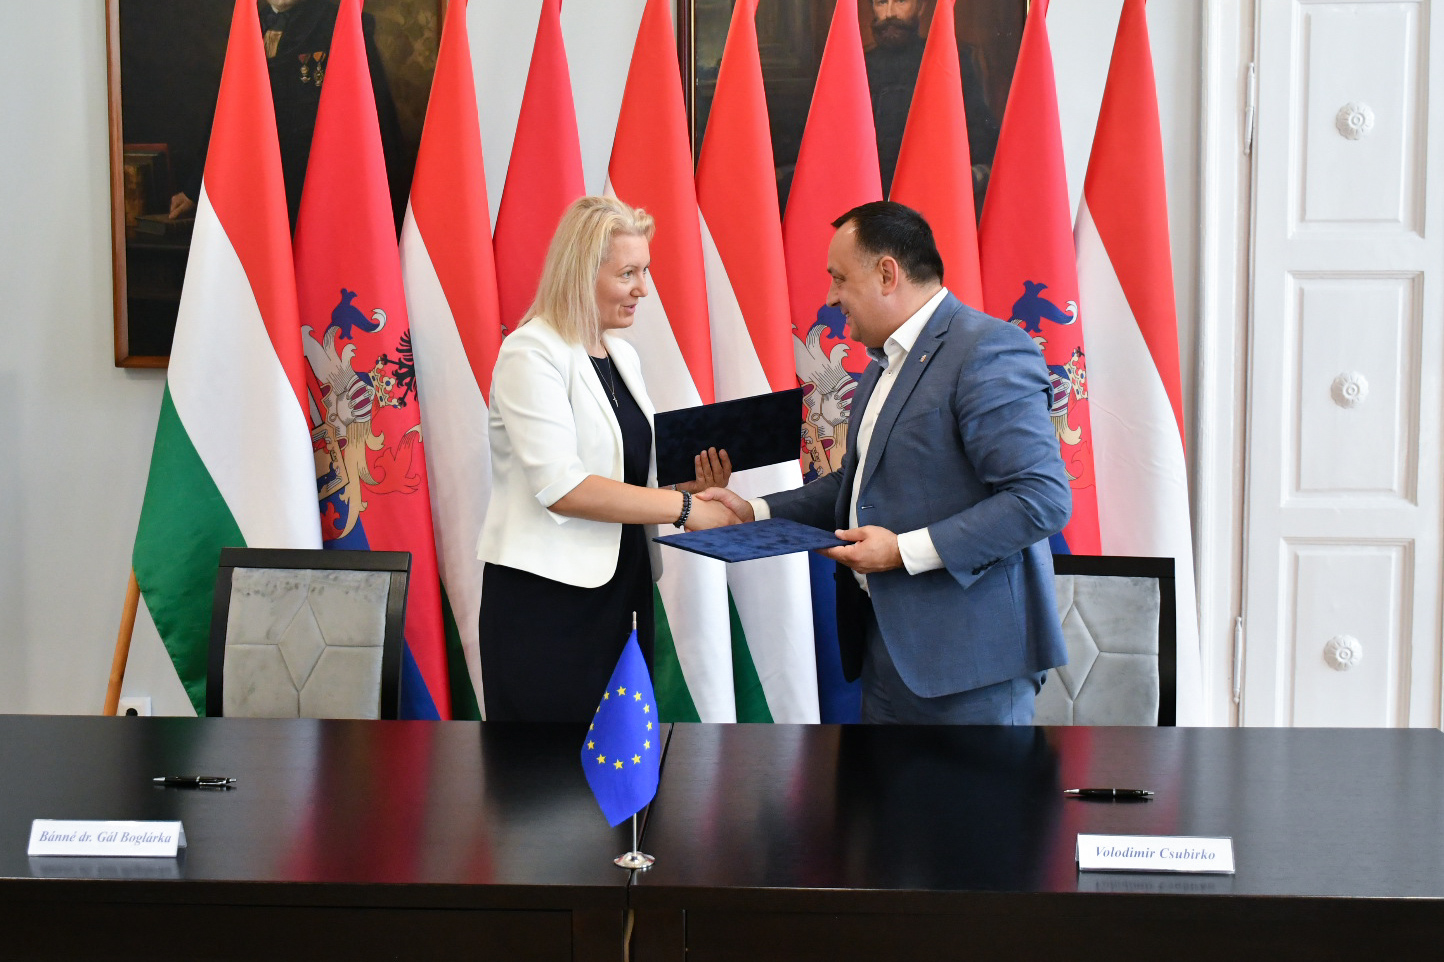 Együttműködési Megállapodást írt alá Bánné dr. Gál Bolgárka és Volodimir Csubirkó